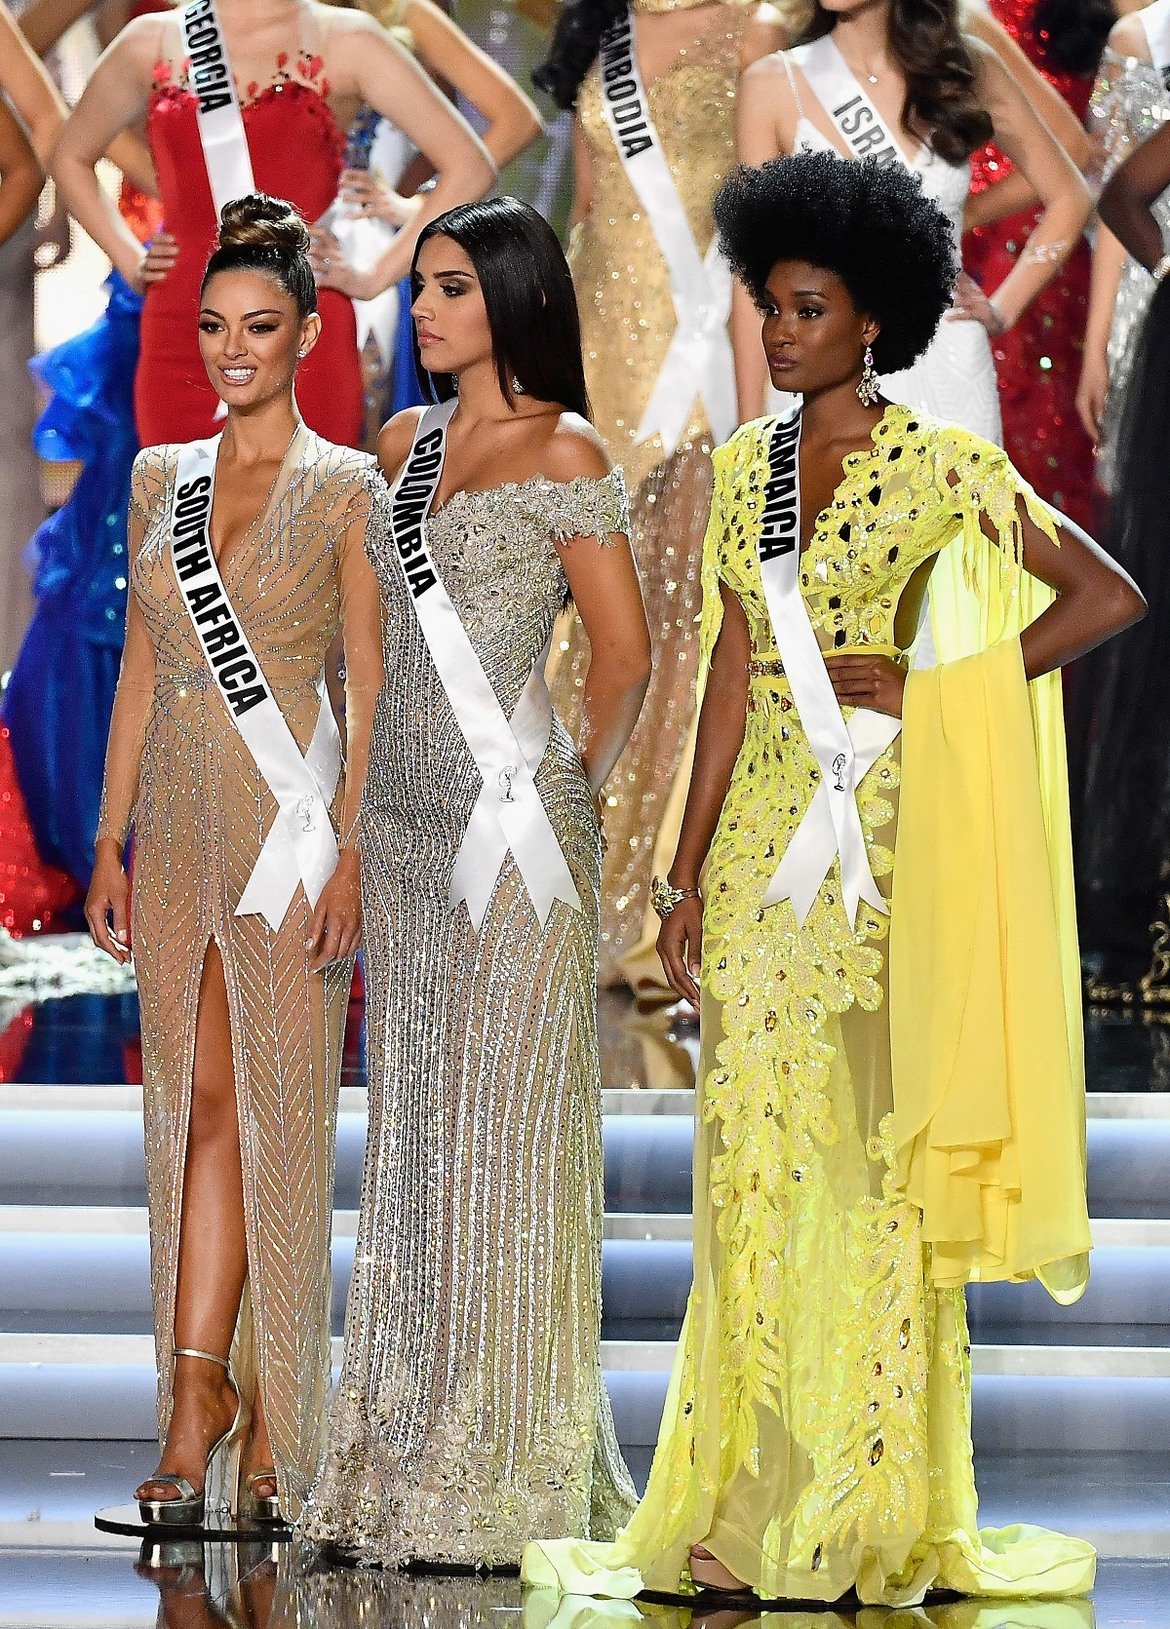 Финалната тройка в конкурса - победителката Мис Южна Африка, първата подгласничка Мис Колумбия Лаура Гонзалез и втората подгласничка Мис Ямайка Давина Бенет.